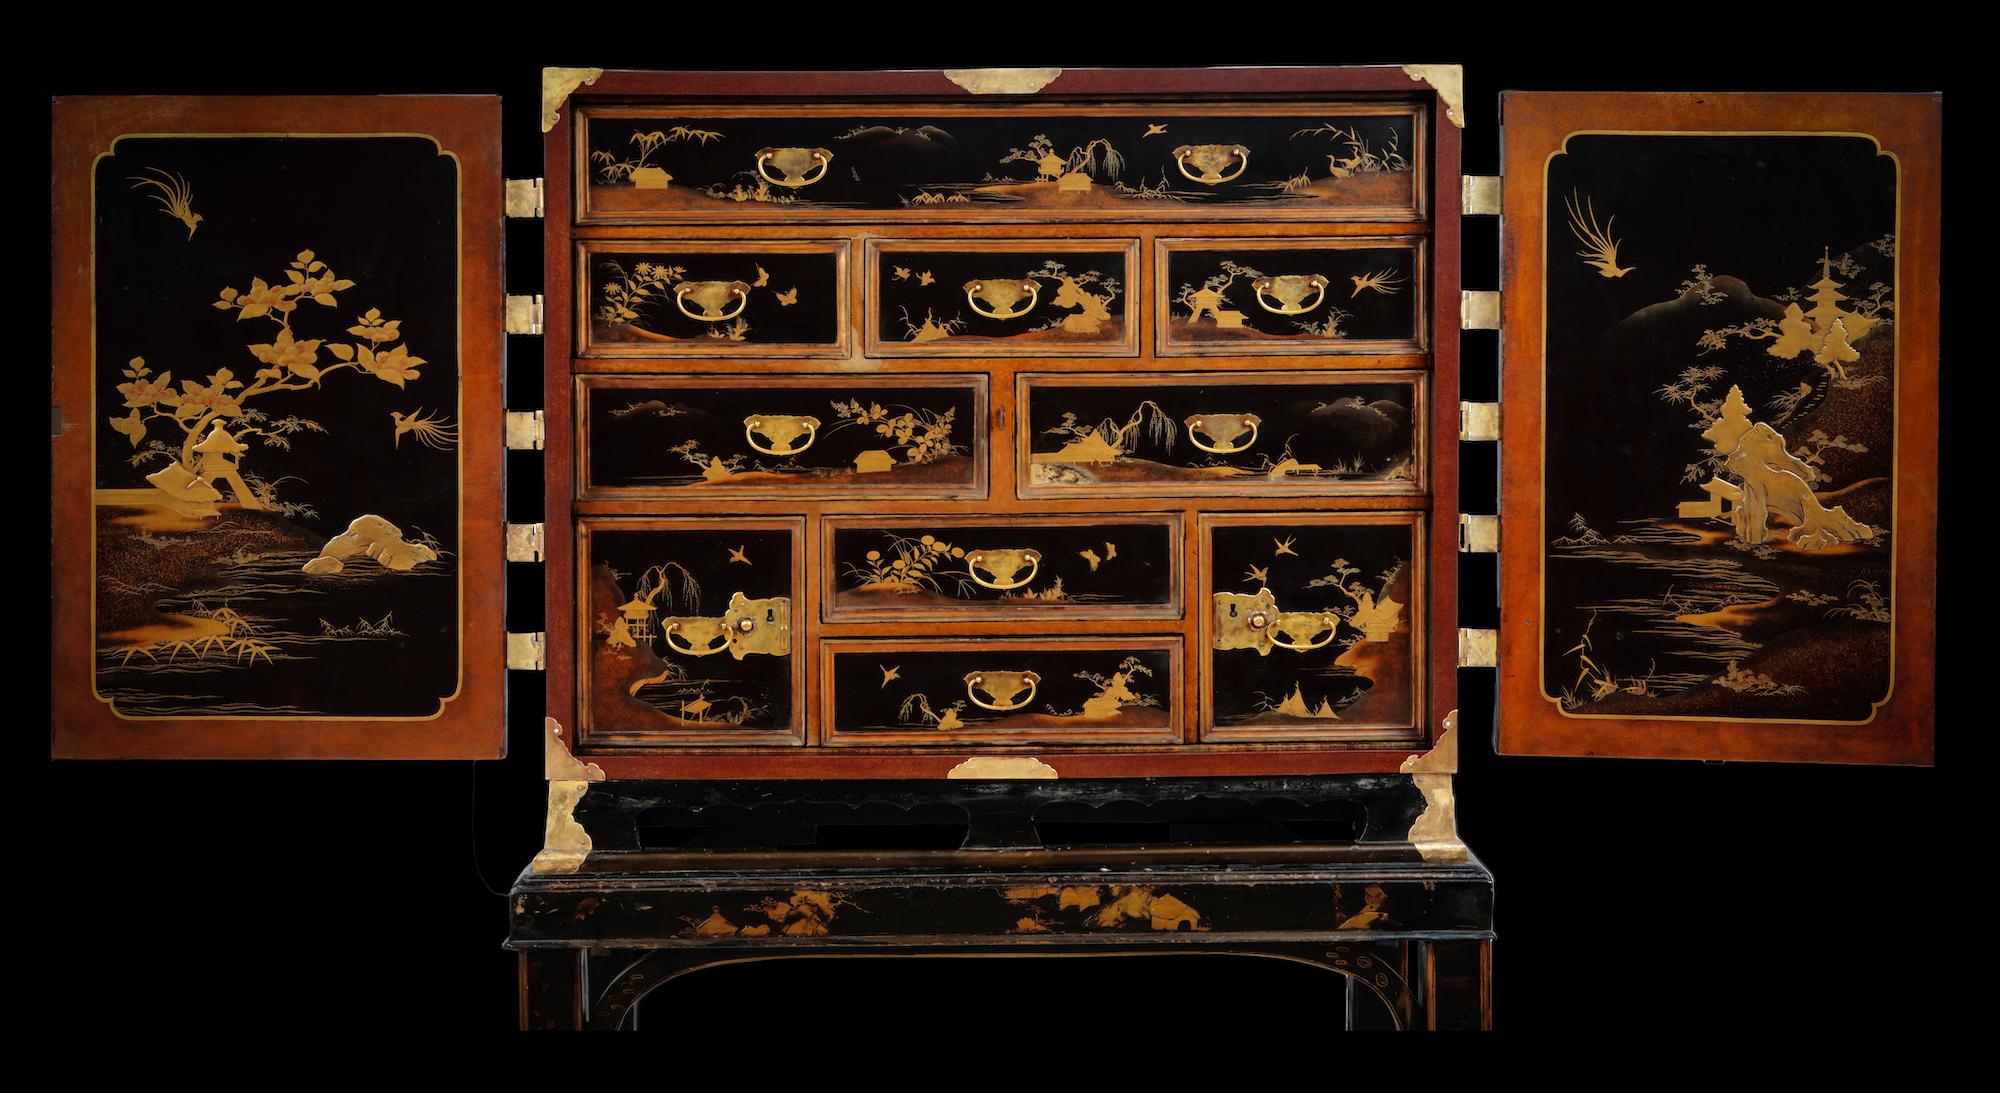 Edo Cabinet en laque d'exportation japonaise du 17e siècle représentant le poste de commerce néerlandais en vente